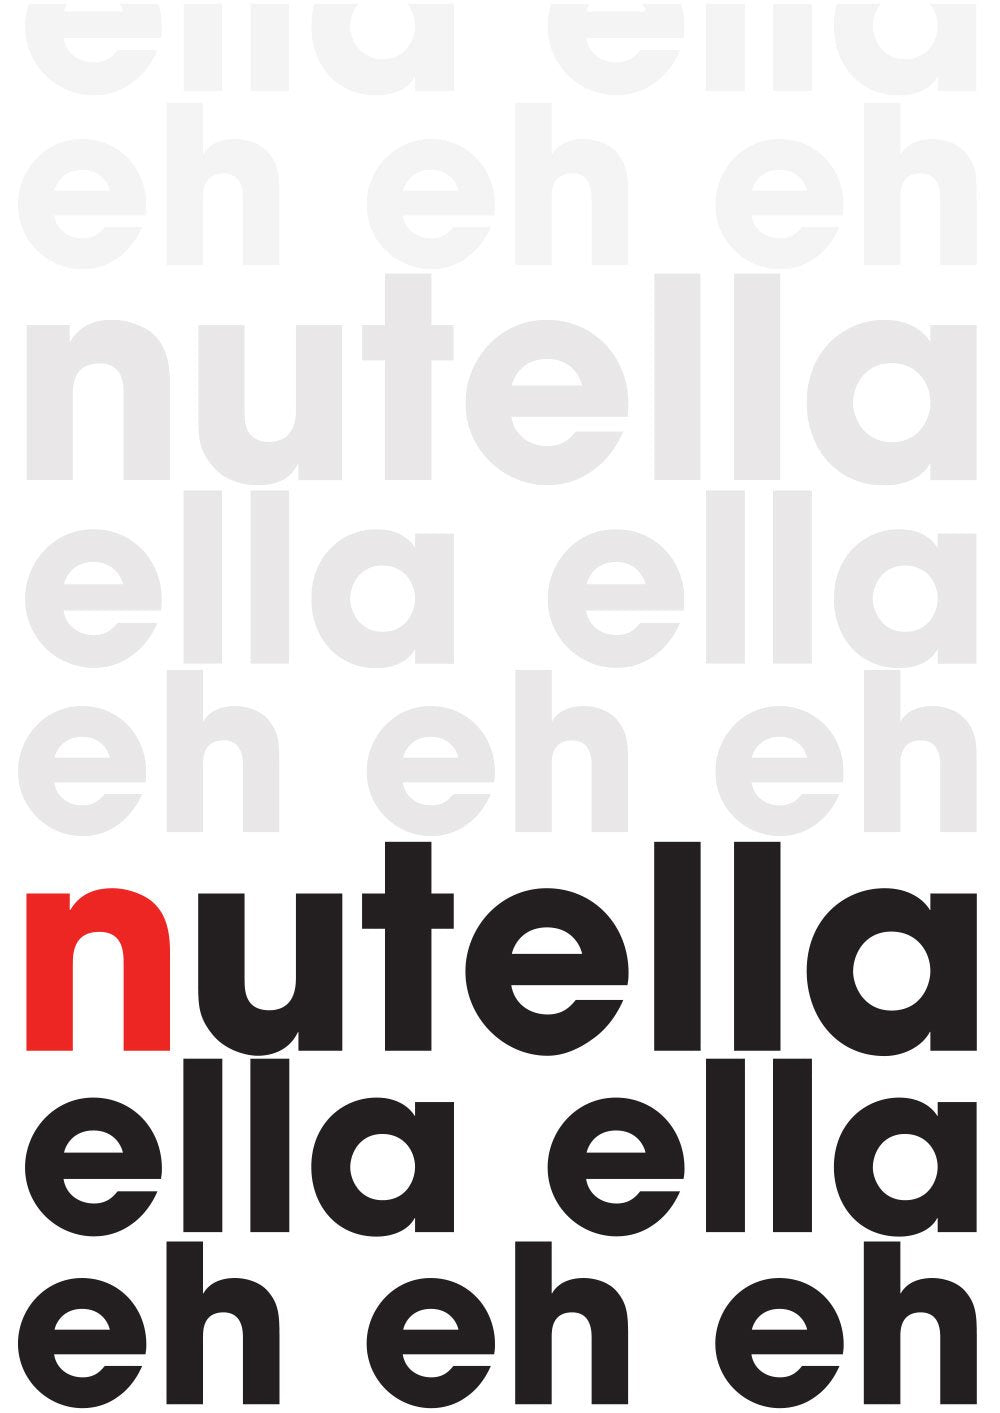 Nutella Ella Ella Eh Eh Eh